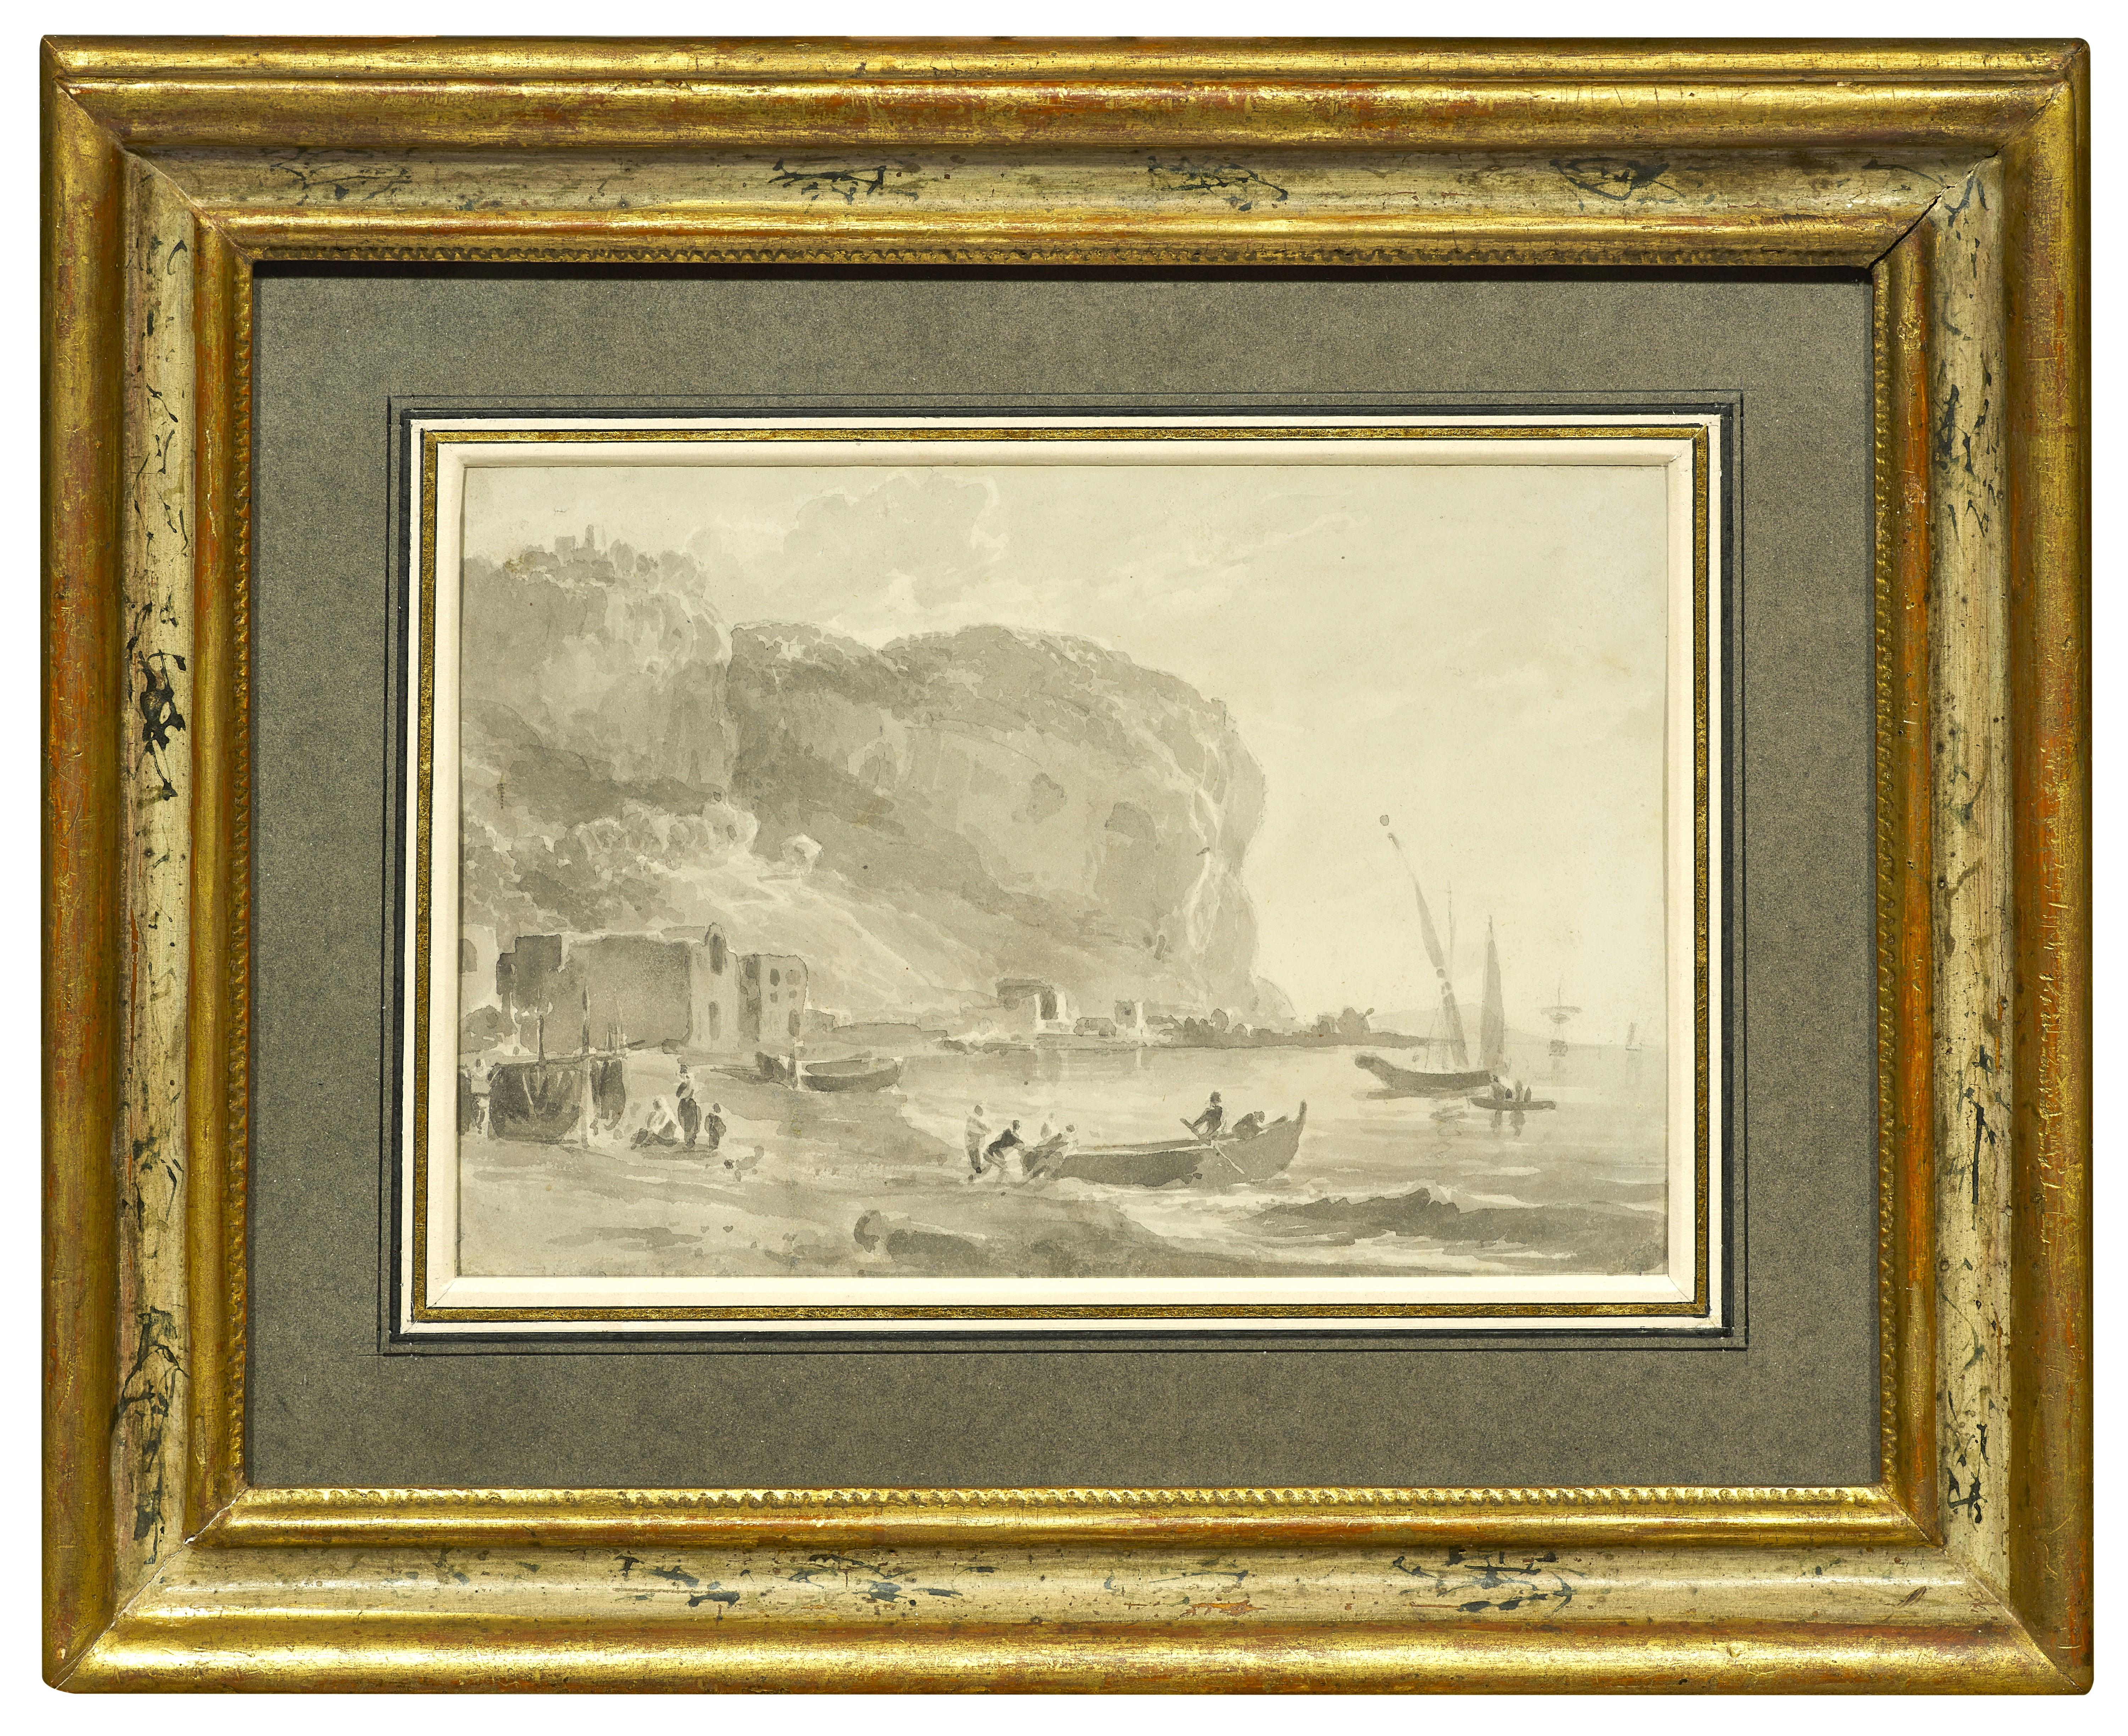 Auf dieser Zeichnung, die von seinem Aufenthalt in Neapel im Jahr 1765 inspiriert ist, zeigt uns William Marlowe einen Blick auf das westlich von Neapel gelegene Kap Posillipo, eine wichtige Etappe der Grand Tour. Die Zeichnung gefiel uns wegen der